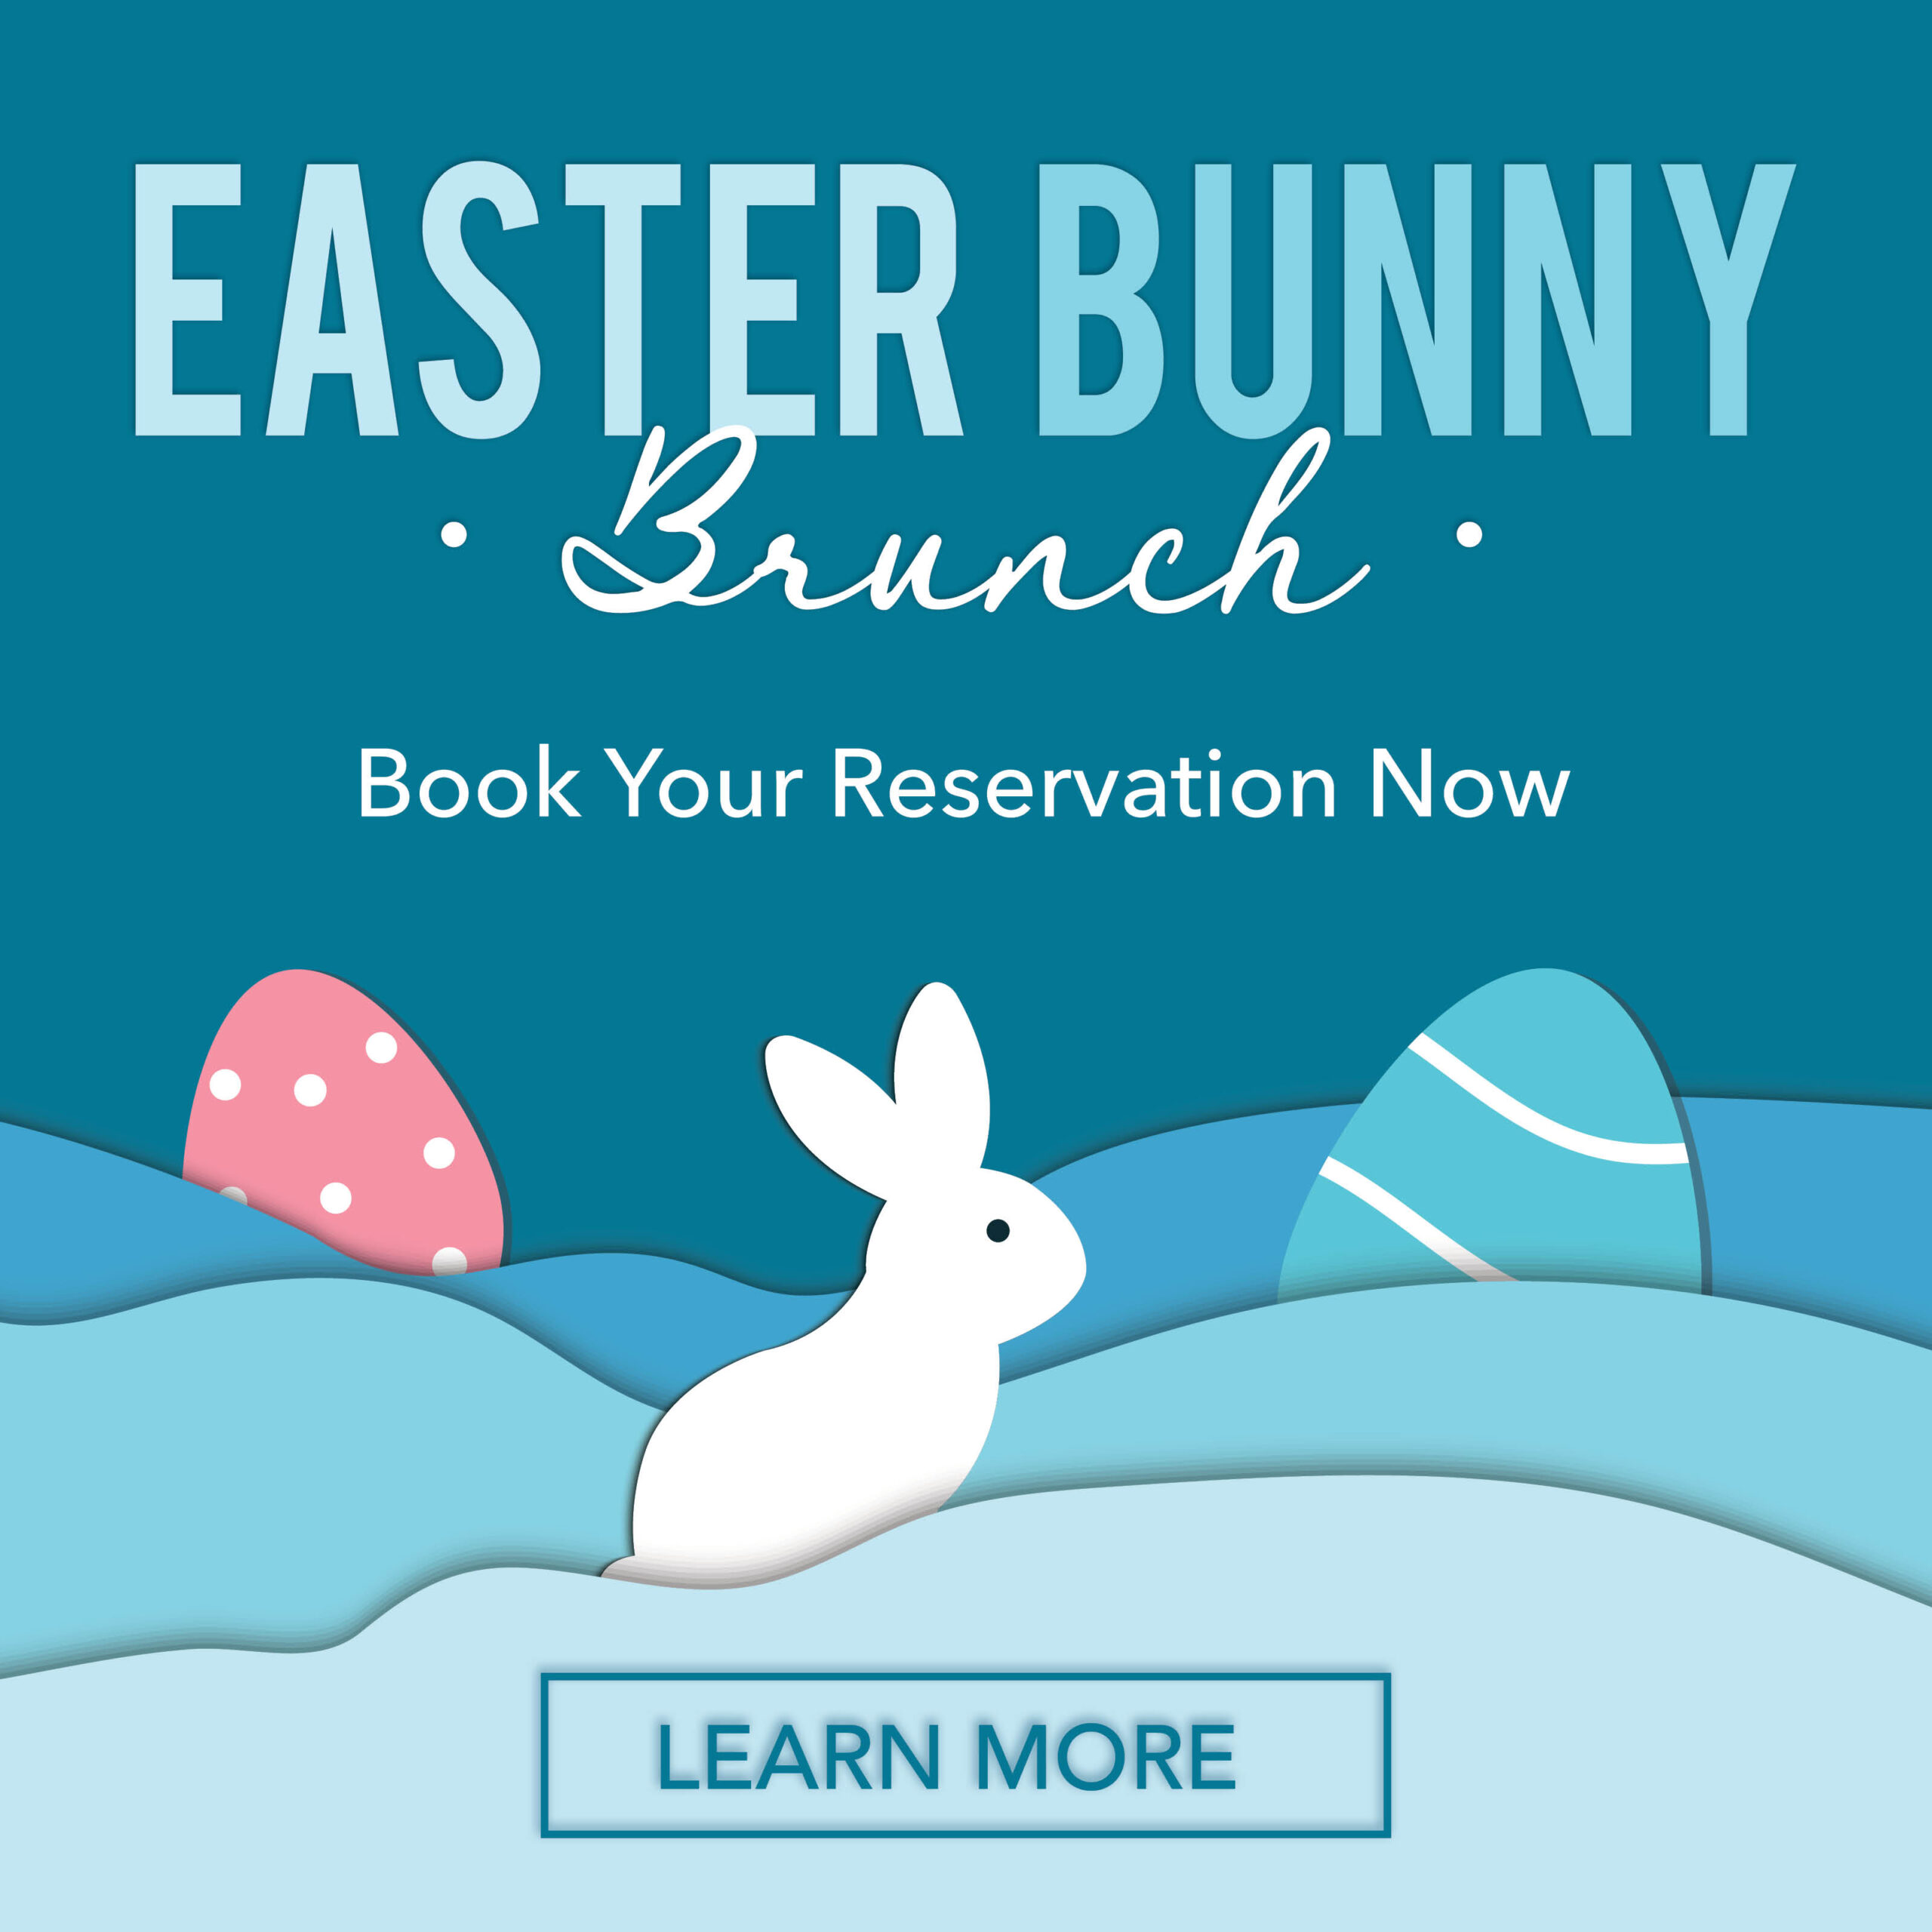 Easter Bunny Brunch